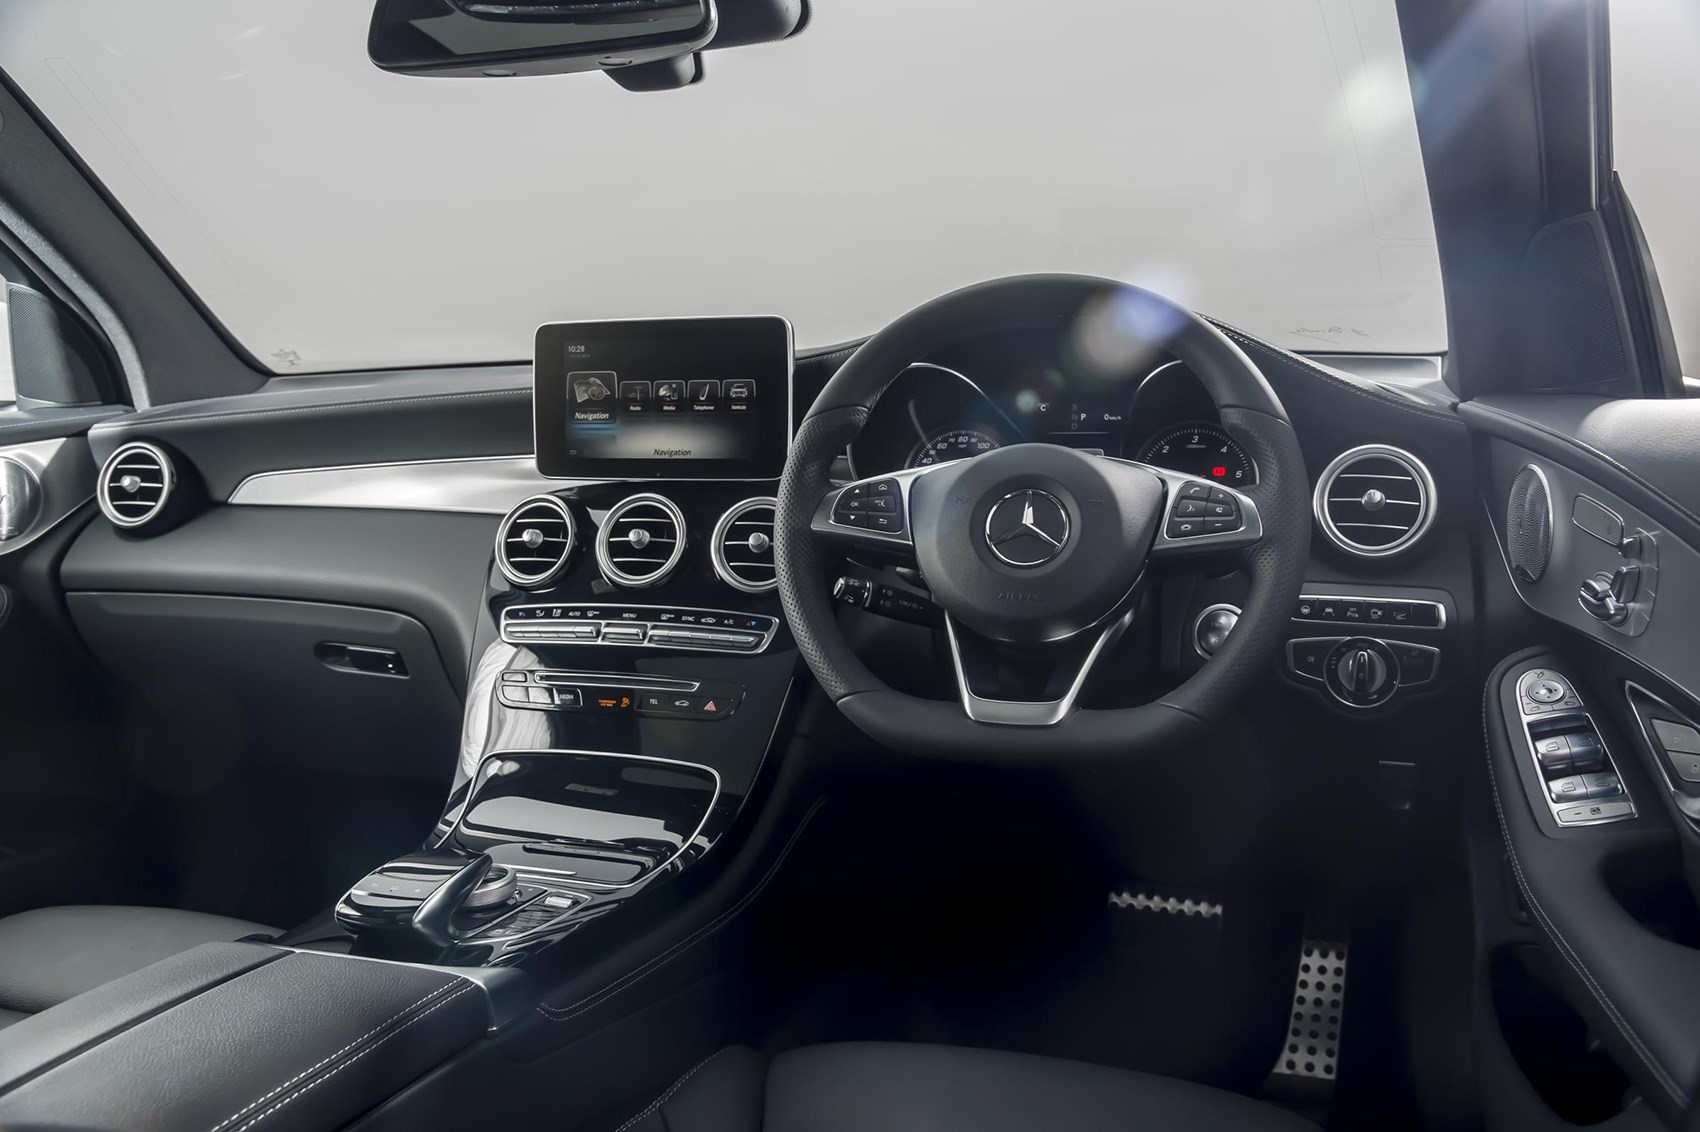 Mercedes-Benz GLC 350d SUV interior and cabin